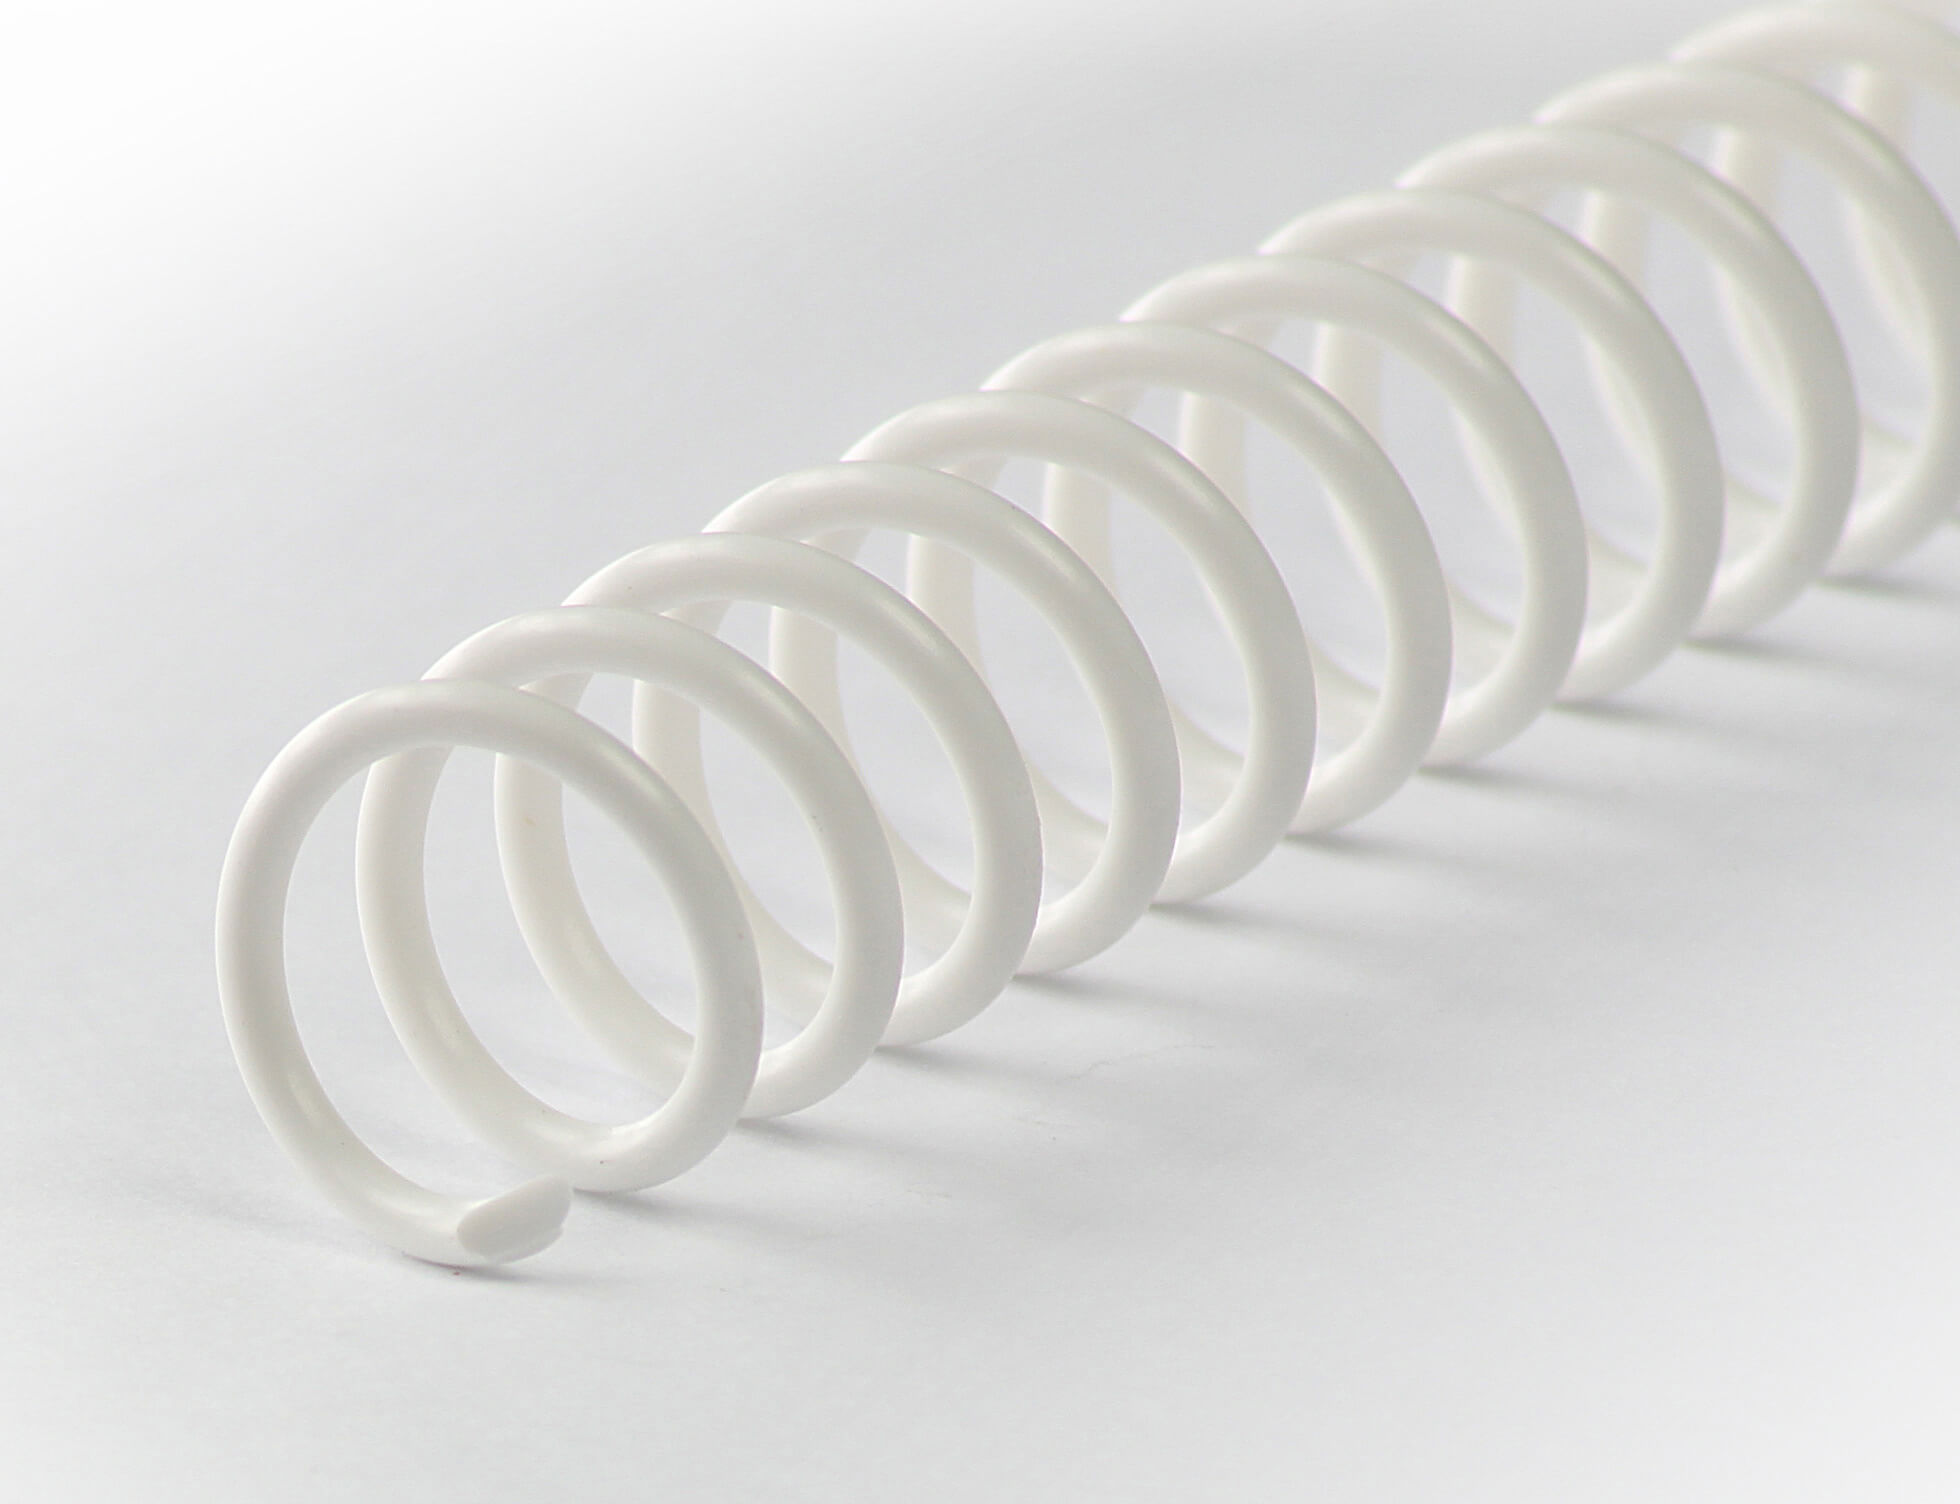 Binderücken CoilBind 47 Ringe 14mm, 4:1 Teilung weiß | Bestnr. CC14-WS